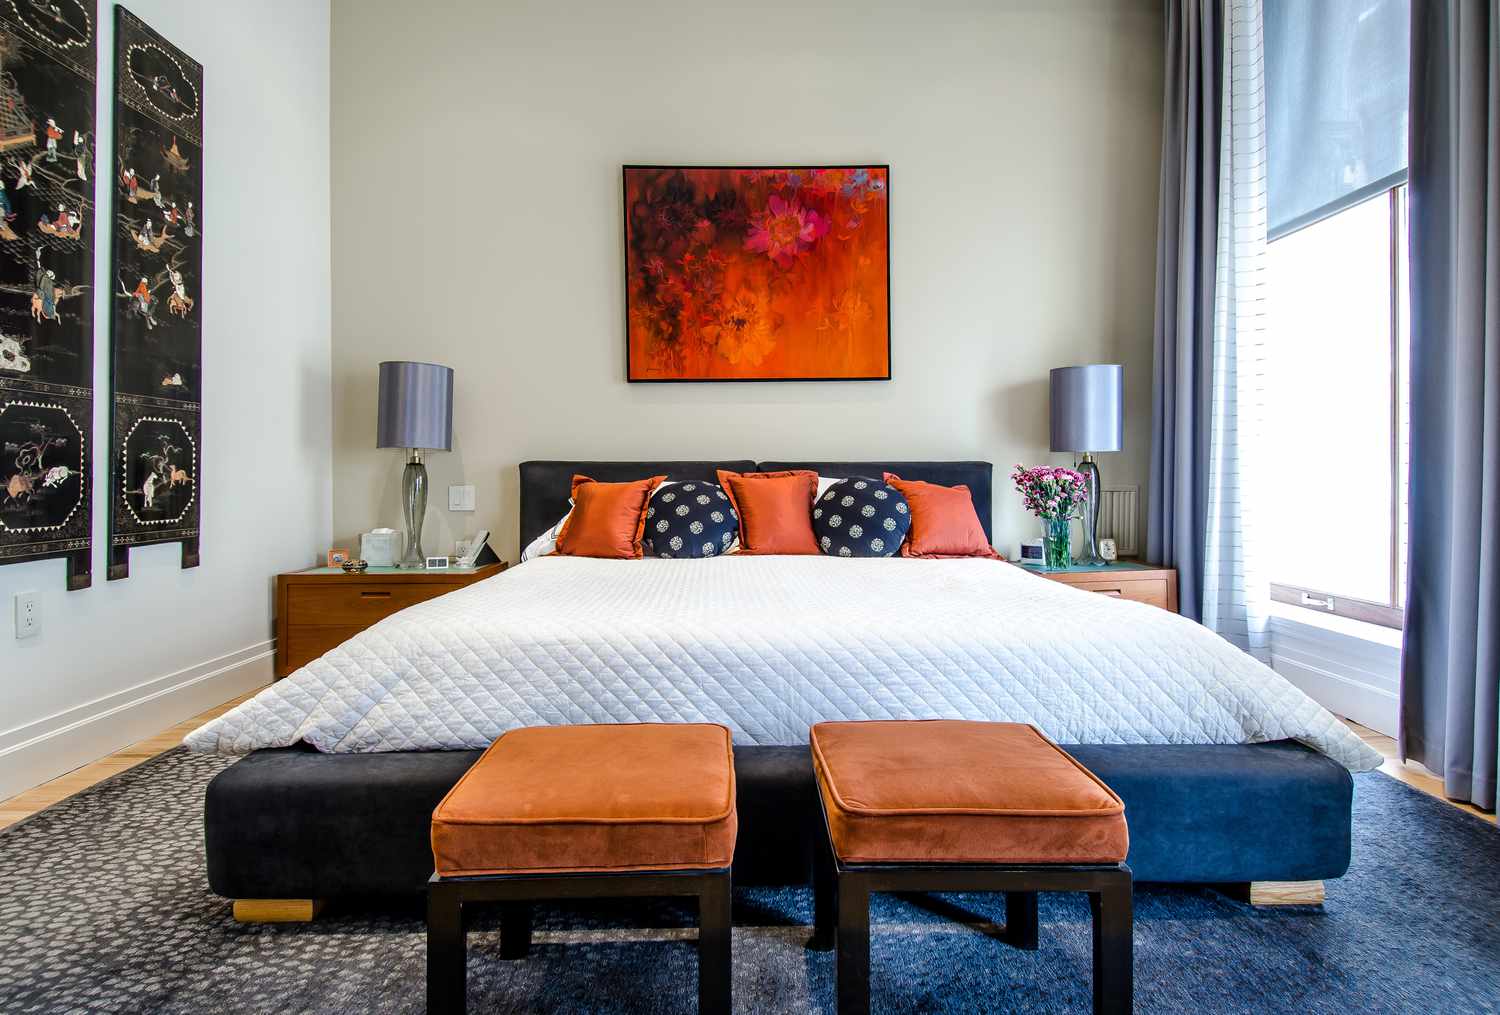 Schlafzimmer in Orange und Marineblau